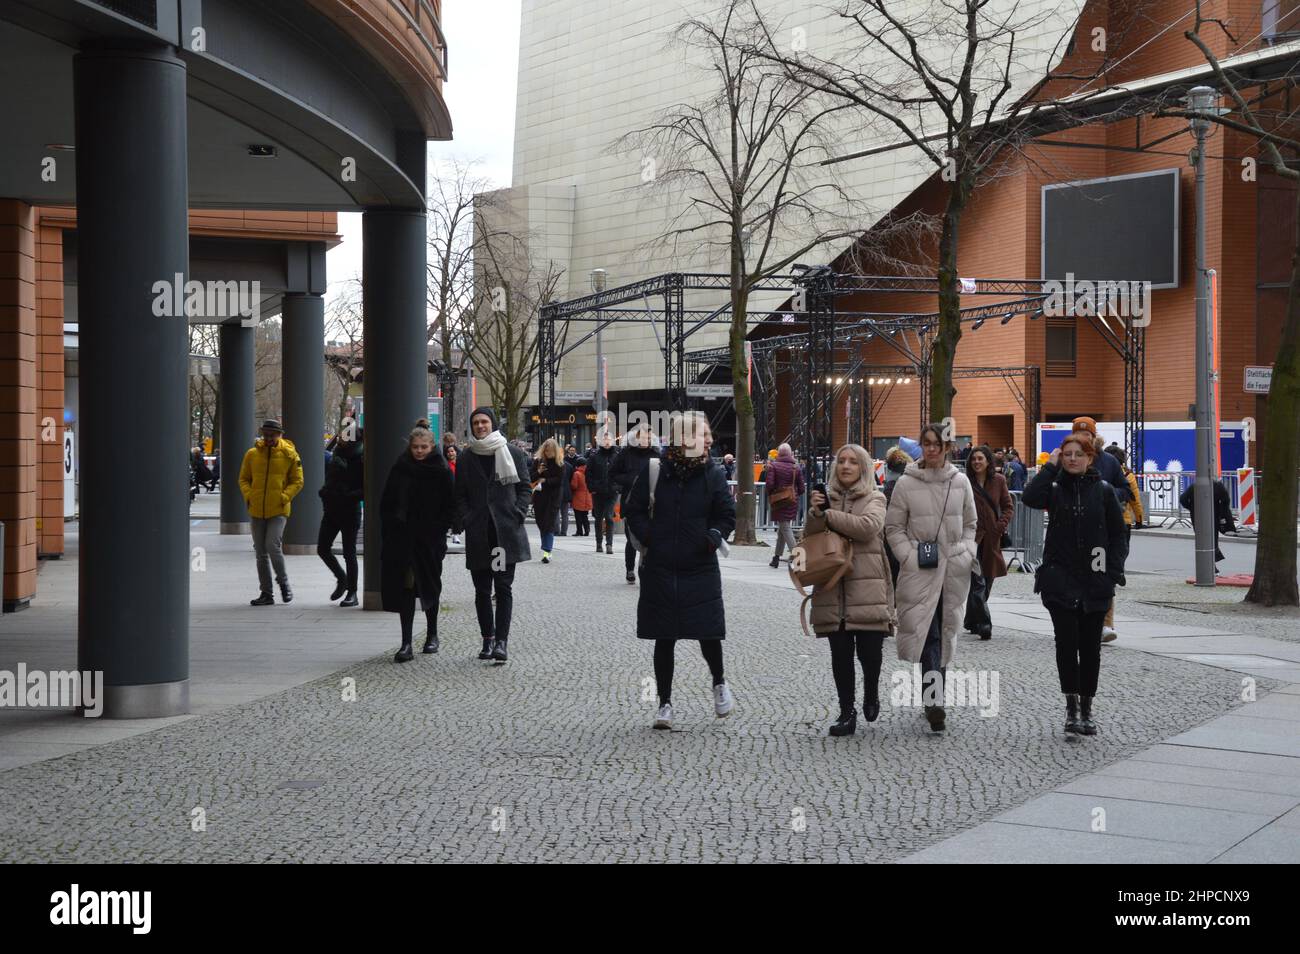 Des spectateurs marchent après une présentation de film à Marlene Dietrich Platz (Potsdamer Platz) à Berlin, Allemagne - 19 février 2022. Banque D'Images